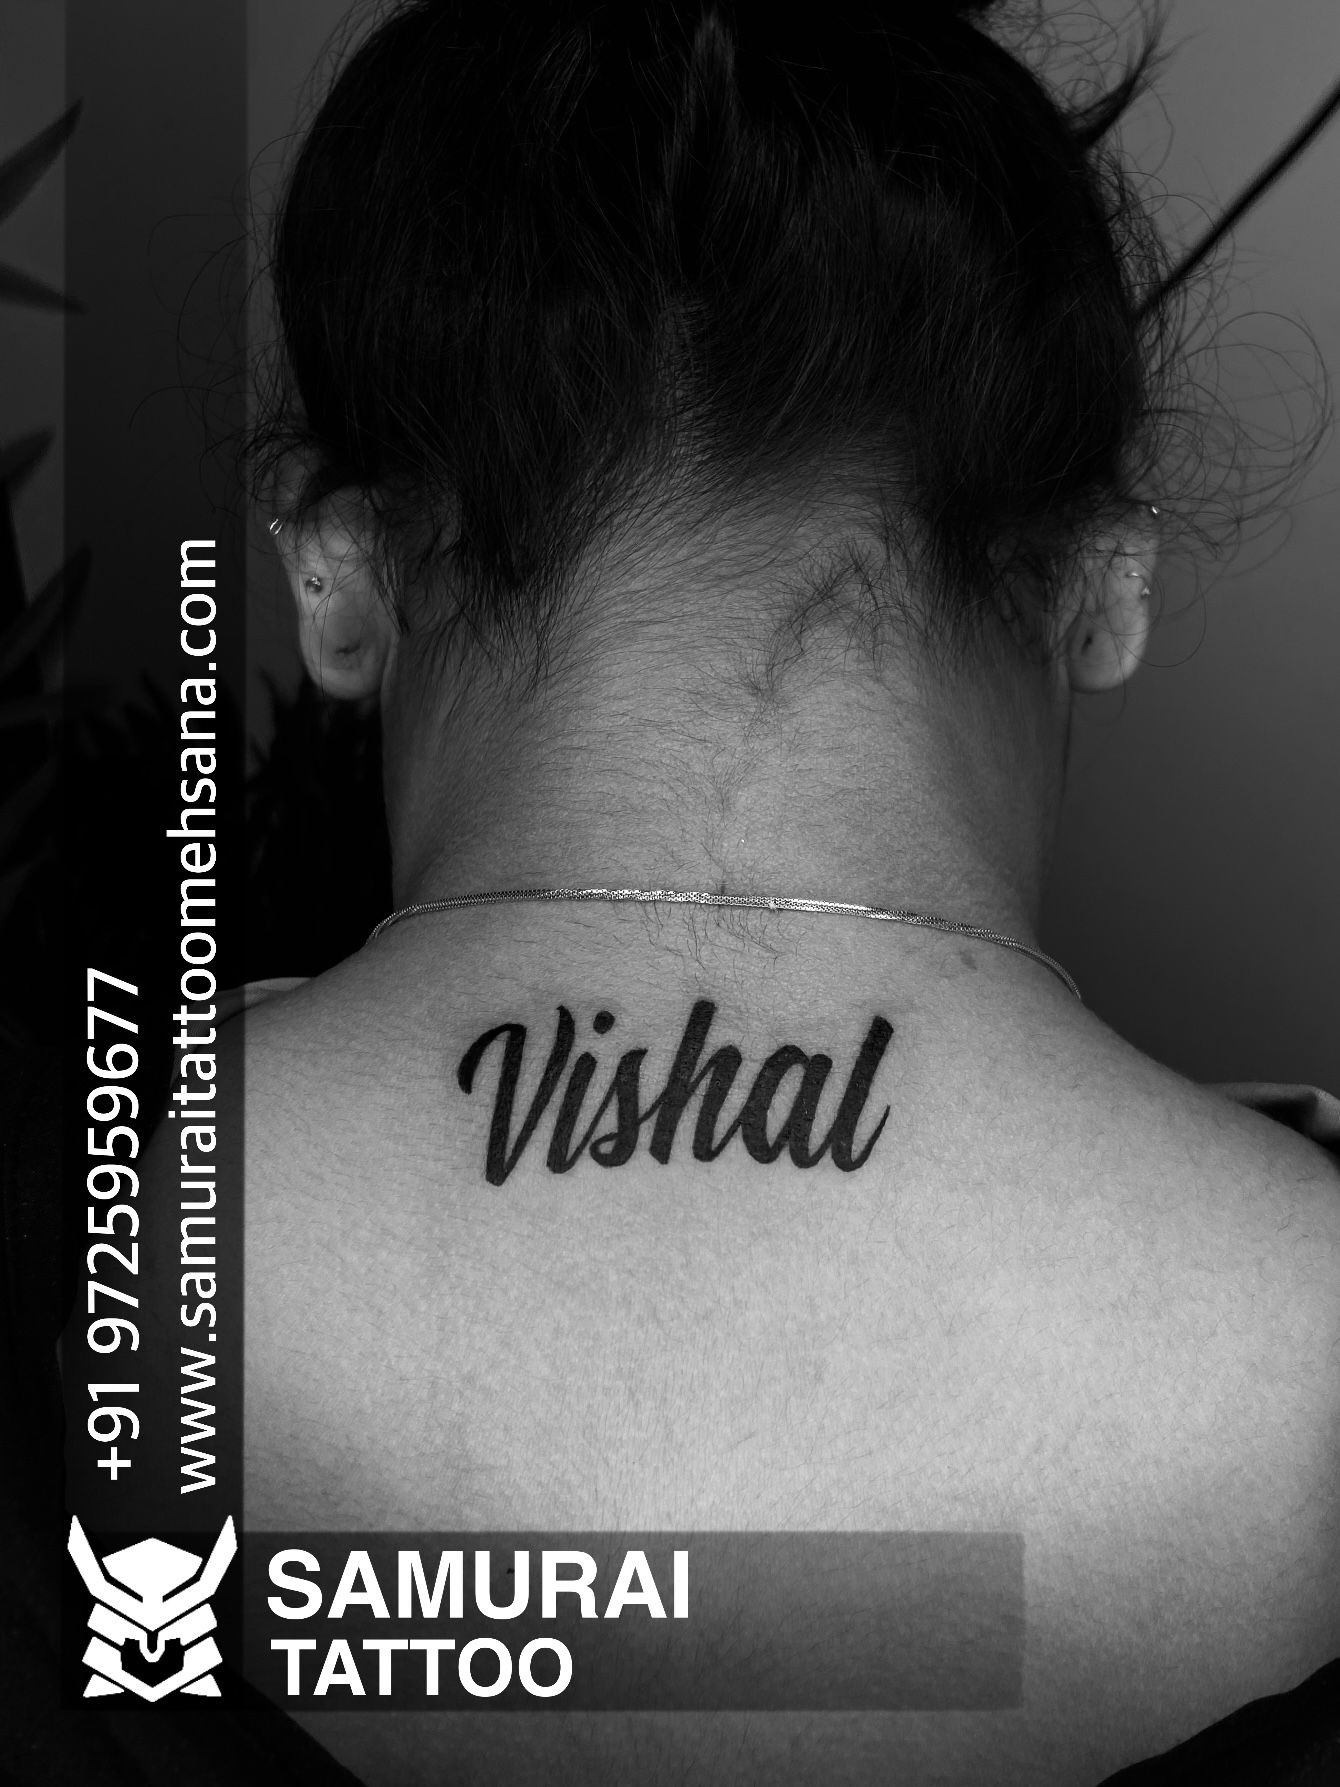 Kali Maa Tattoo by Vishal Maurya by Javagreeen on DeviantArt